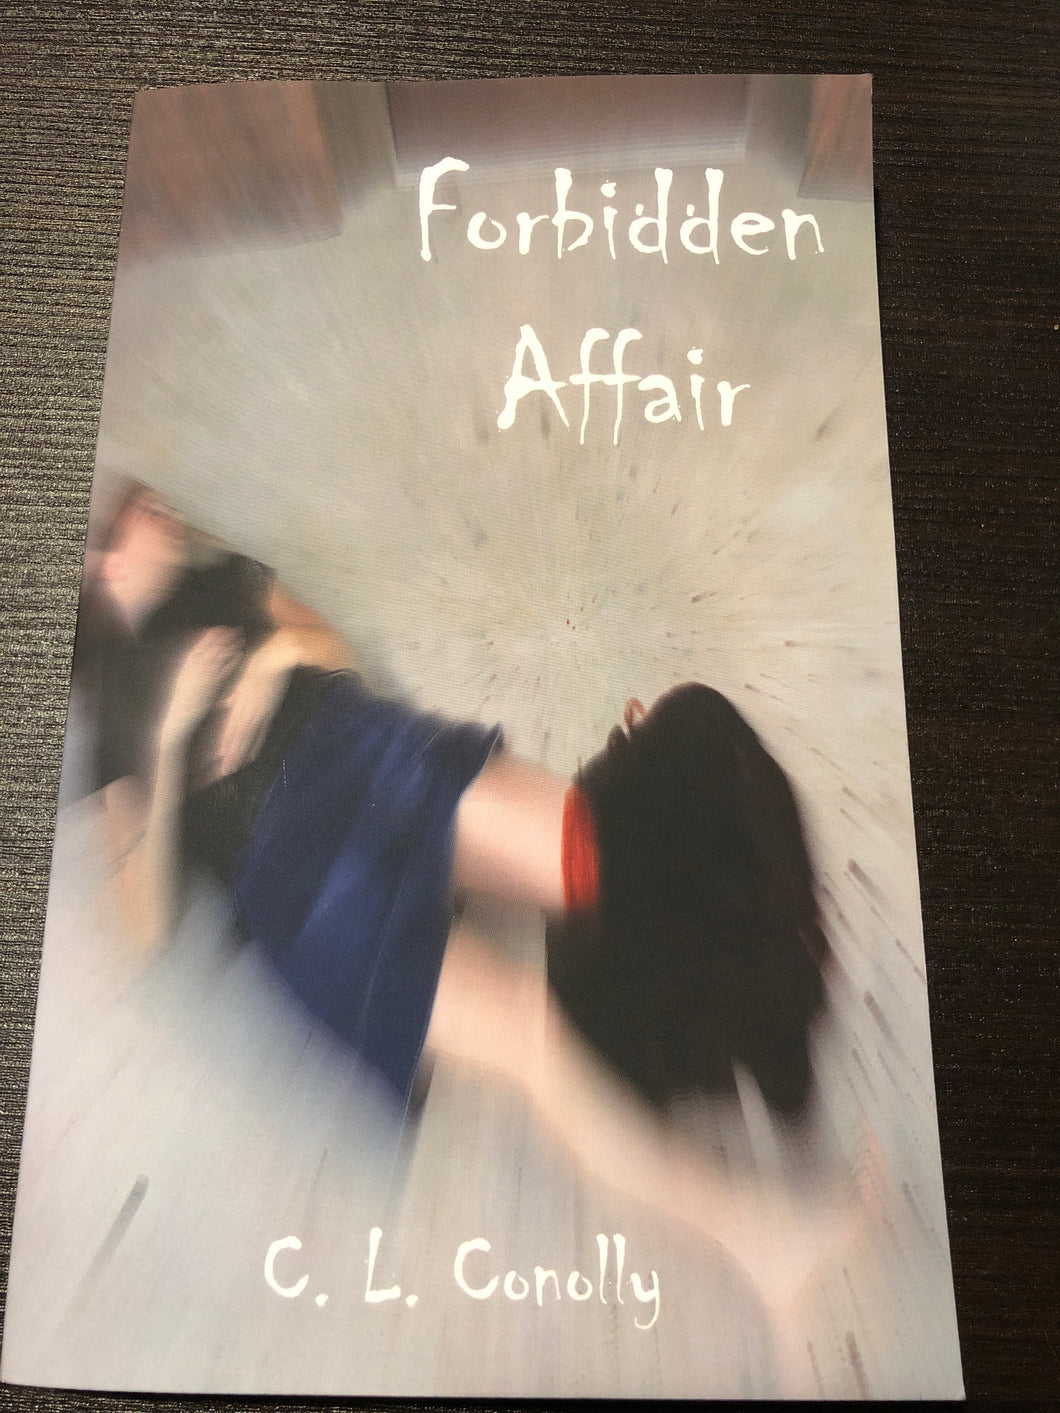 Forbidden Affair